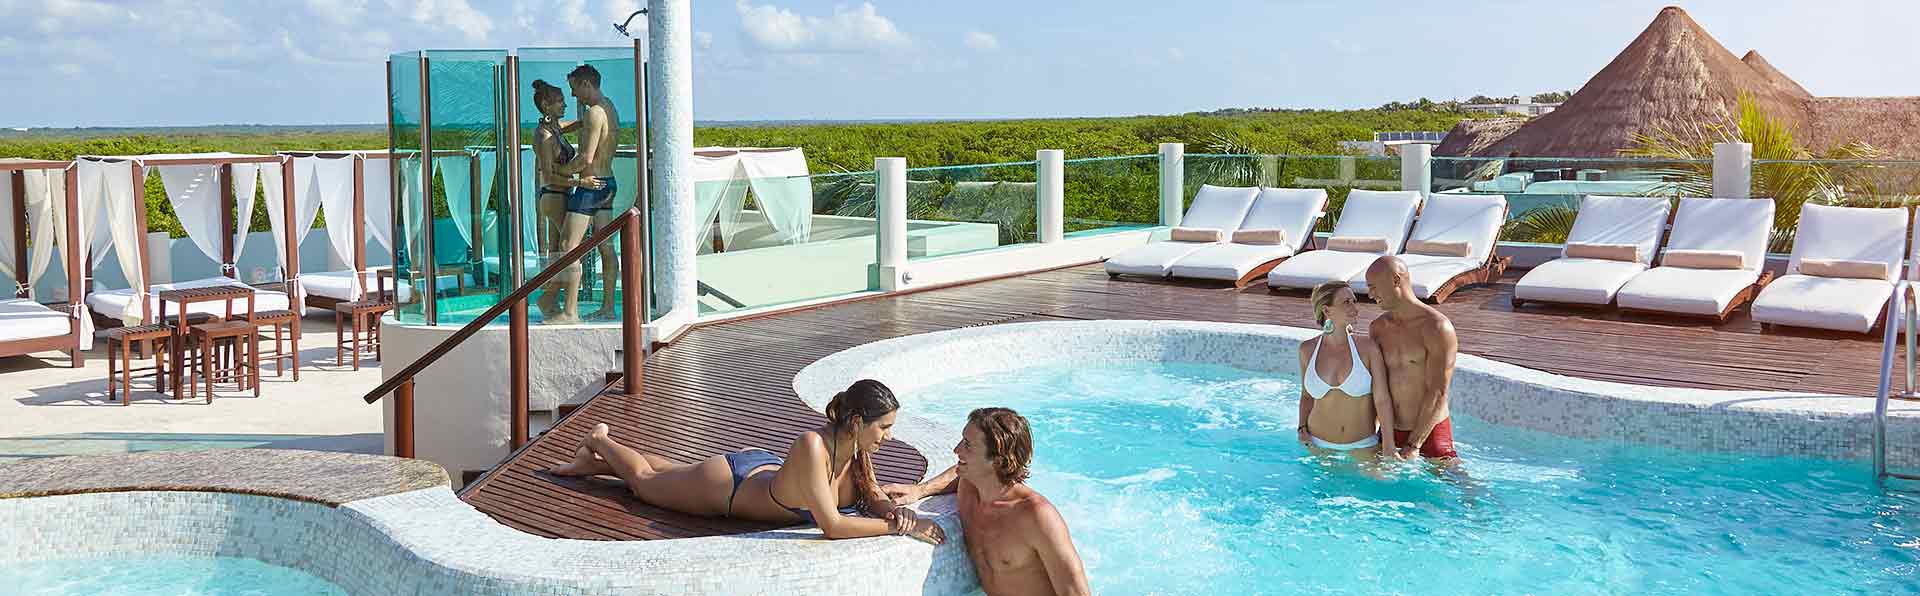 Desire Resort Rooftop Jacuzzi Lounge